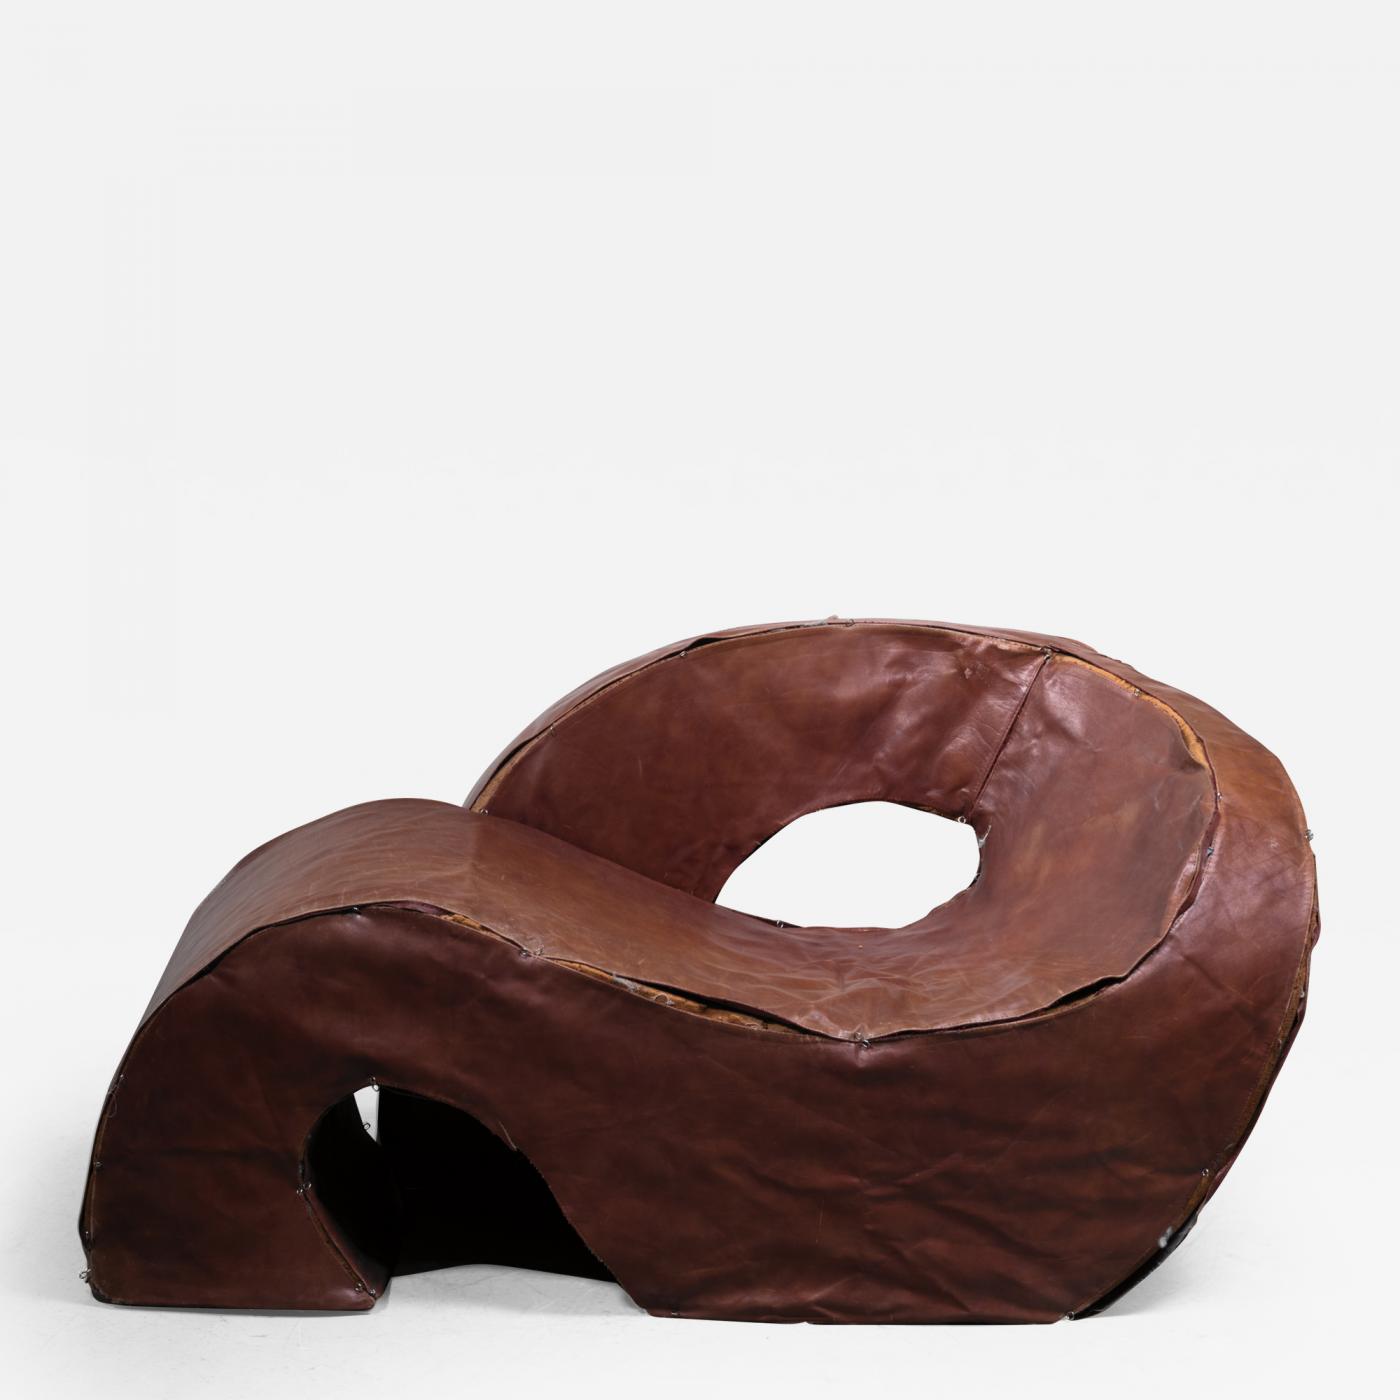 Nani Prina - Sculptural Sess Lounge Chair by Nani Prina for Sormani, 1968